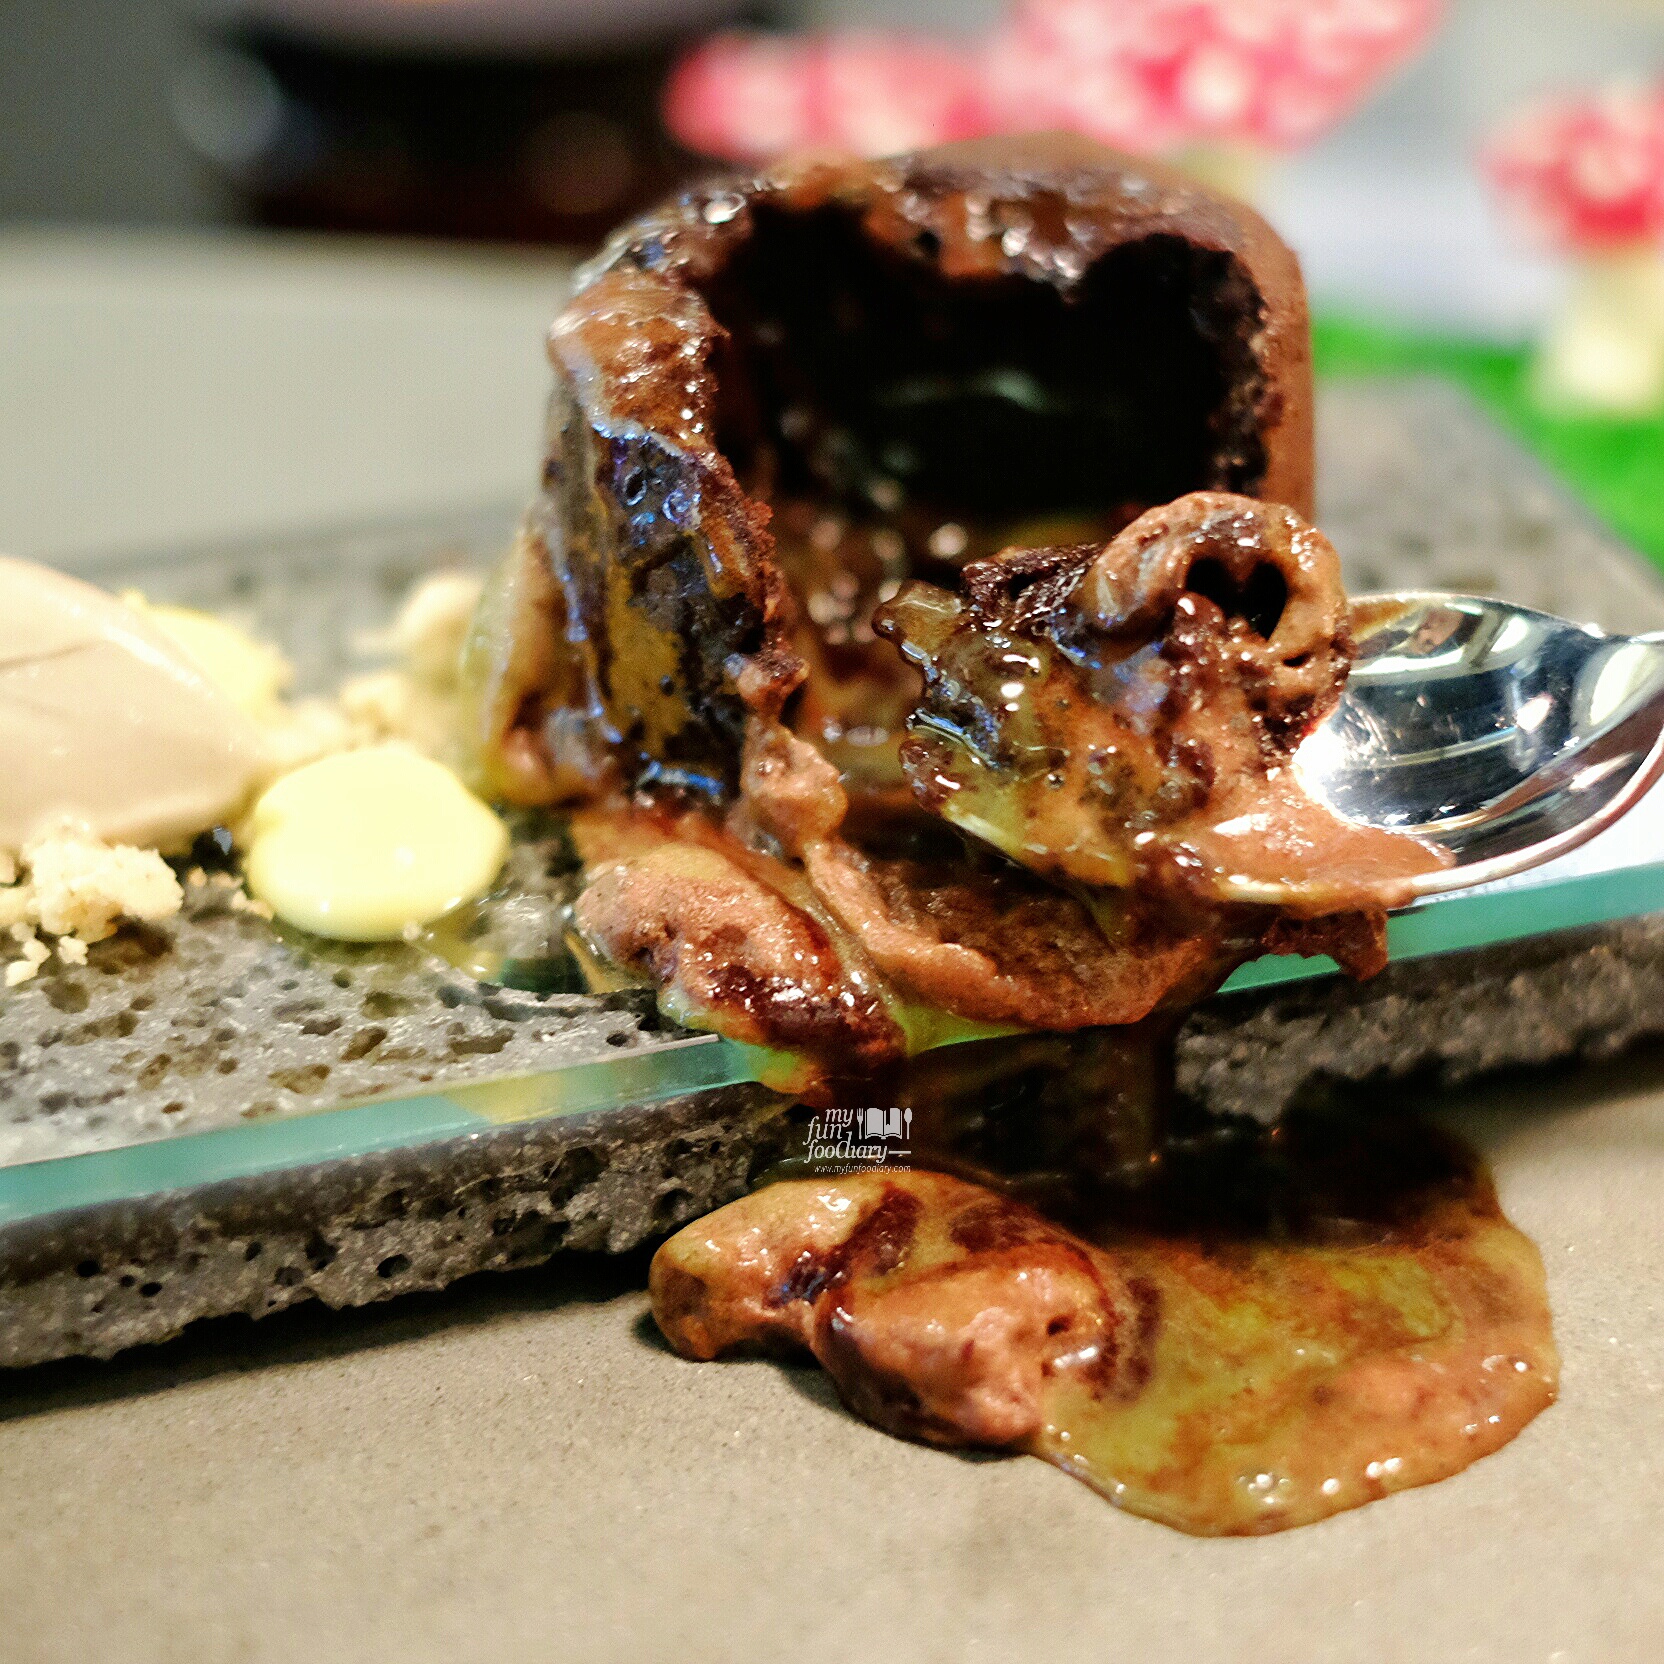 Choco Matcha Cake Dessert Omakase by Kim at Nomz by Myfunfoodiary 02